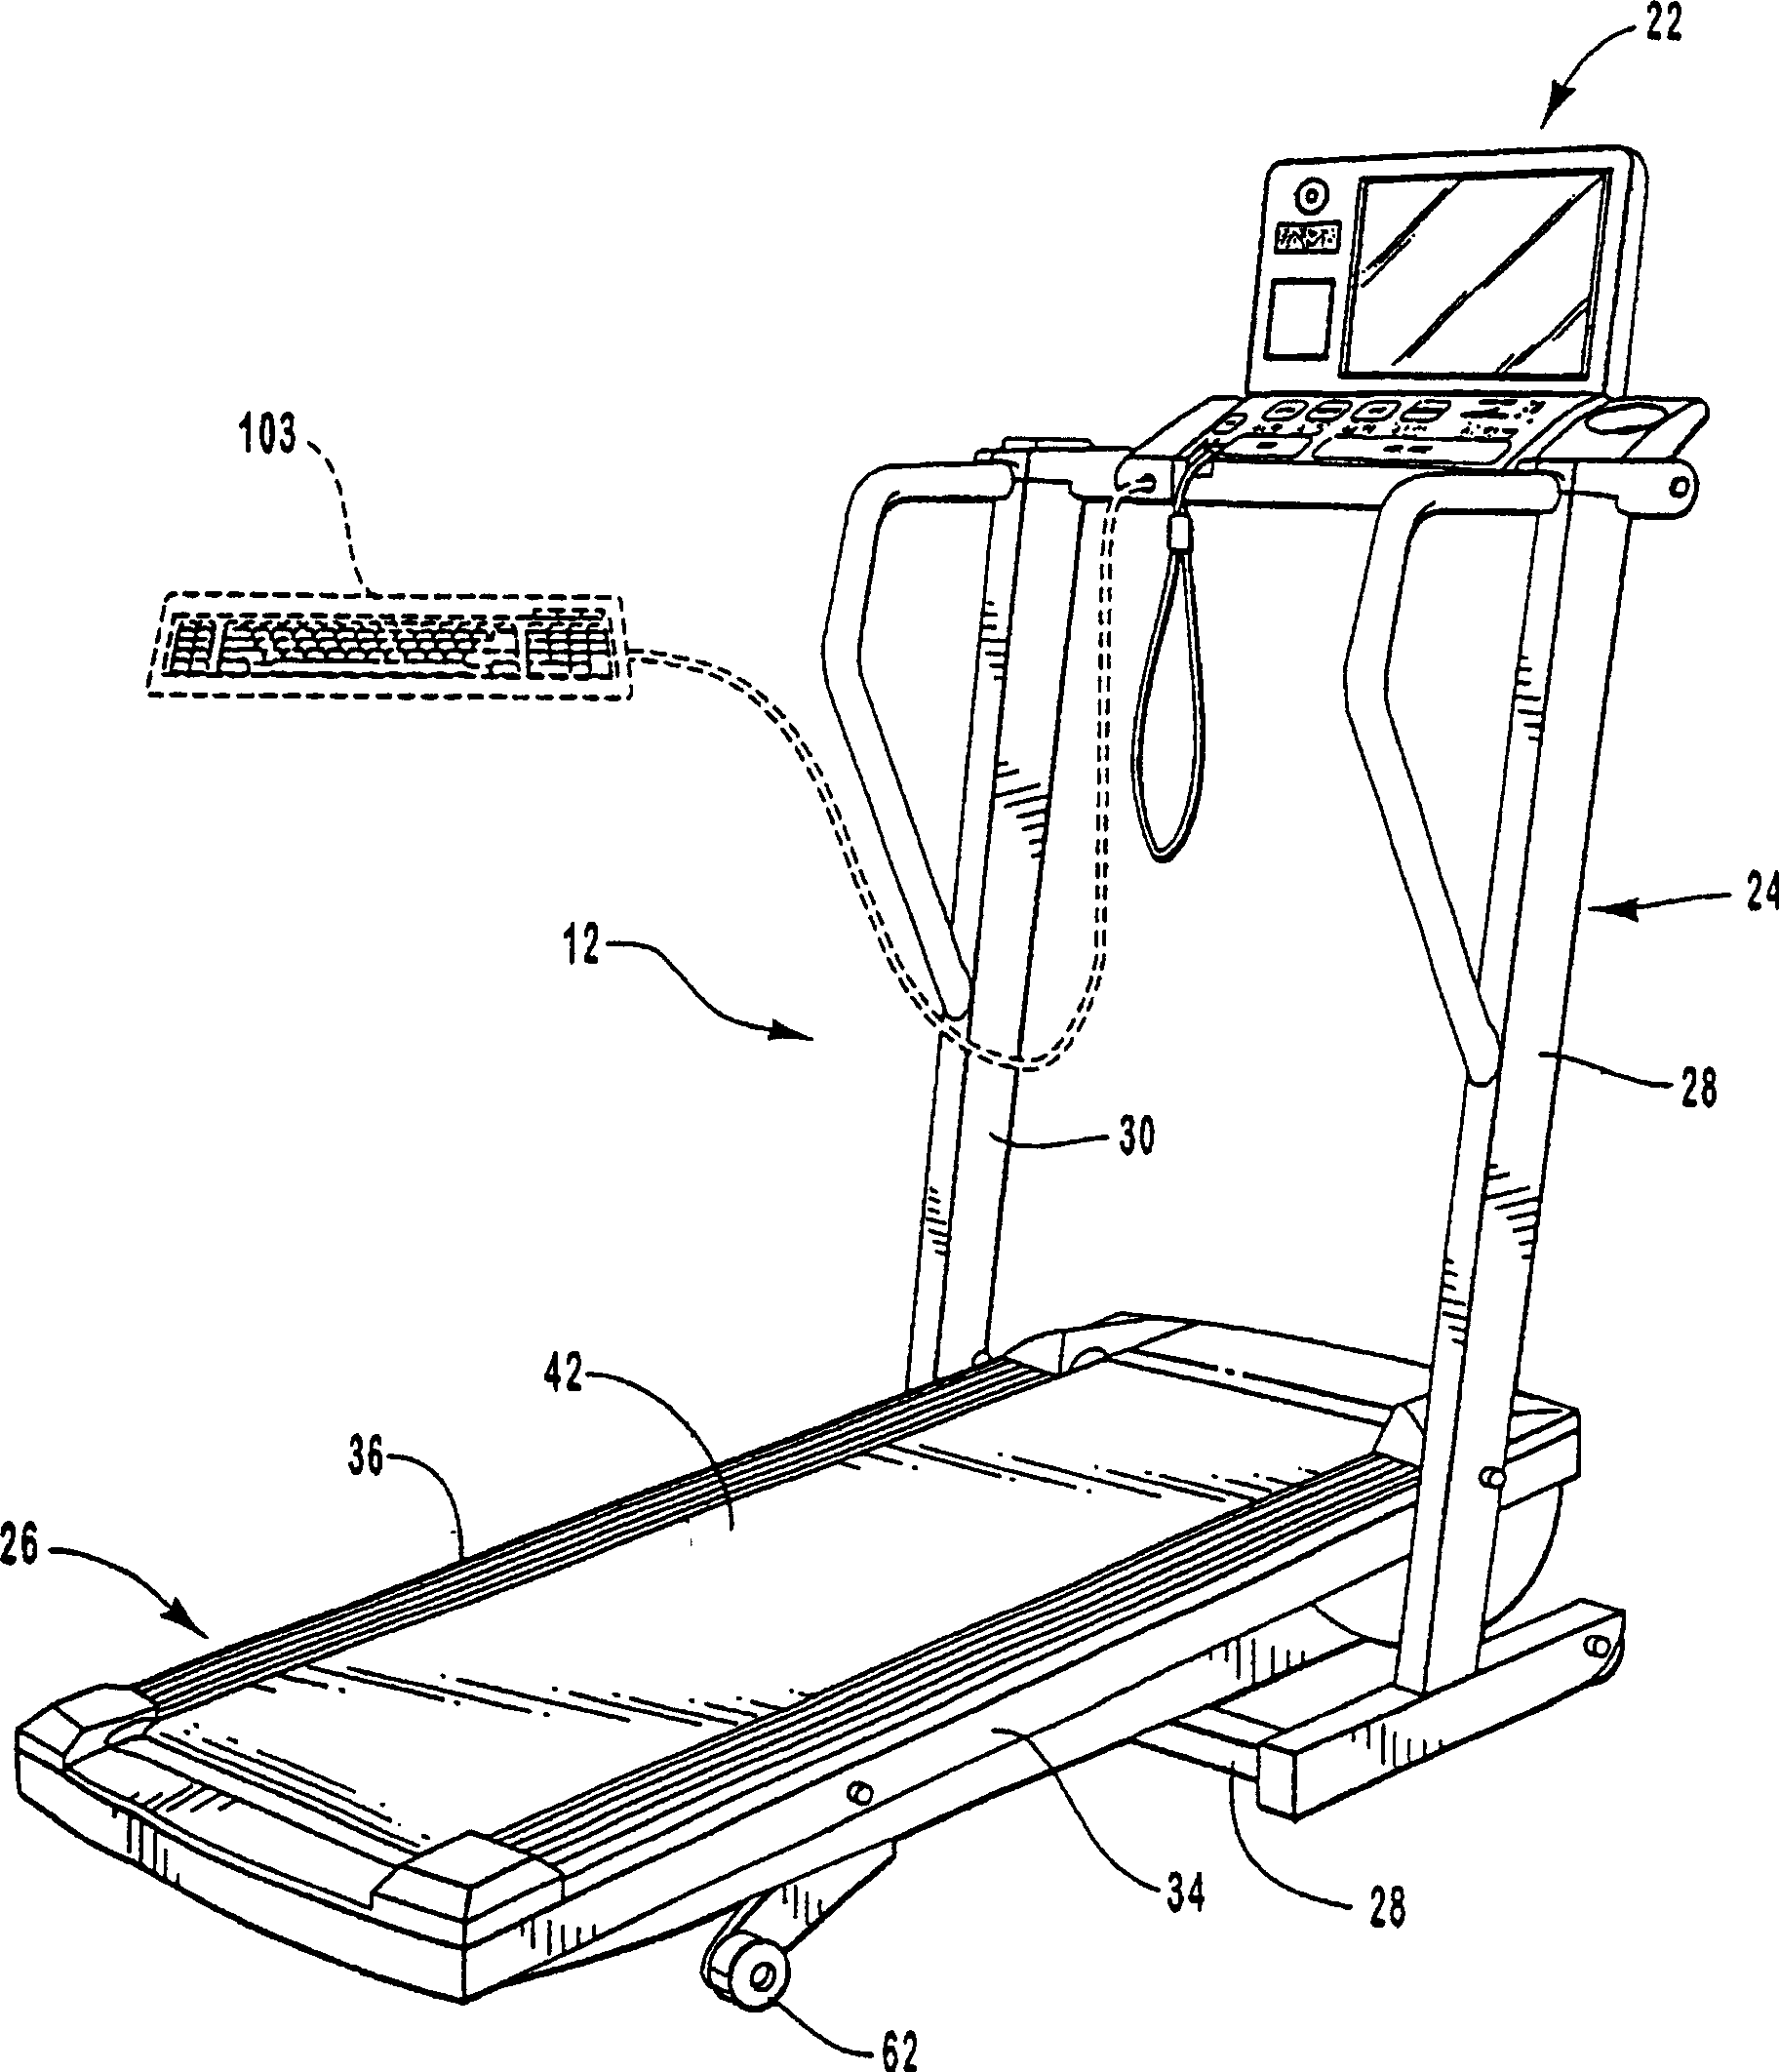 An exercise apparatus